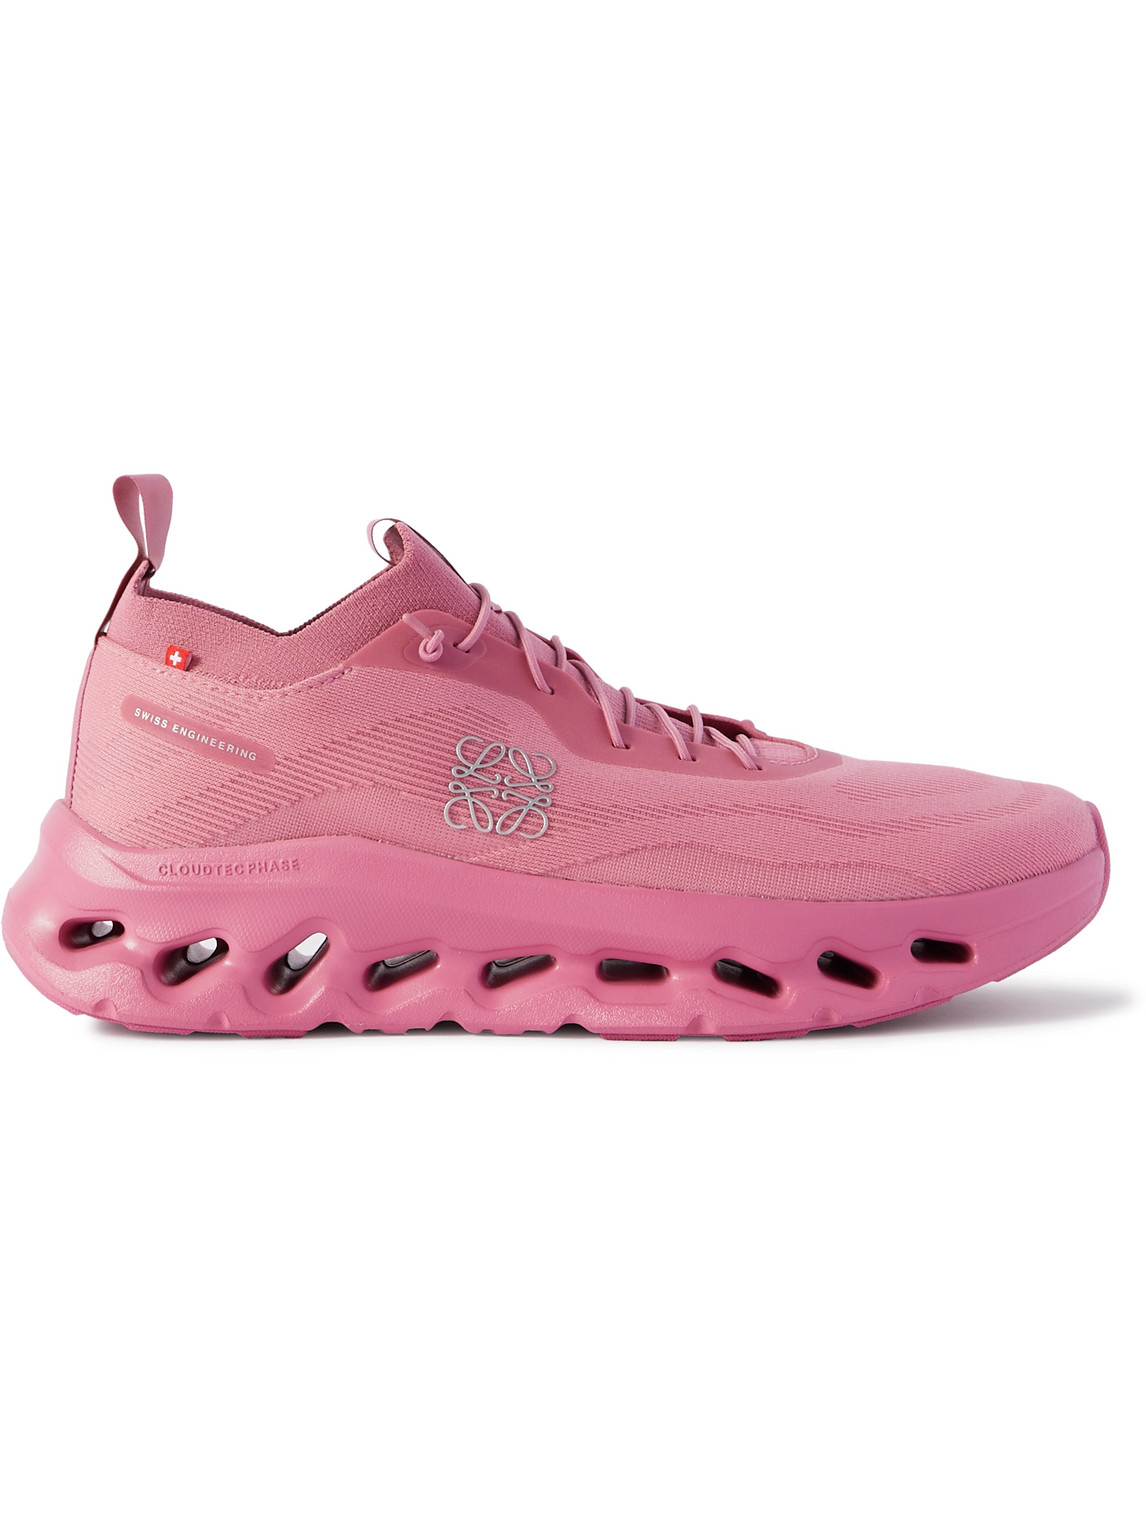 LOEWE - On Cloudtilt Stretch-Knit Sneakers - Men - Pink - EU 48 von LOEWE